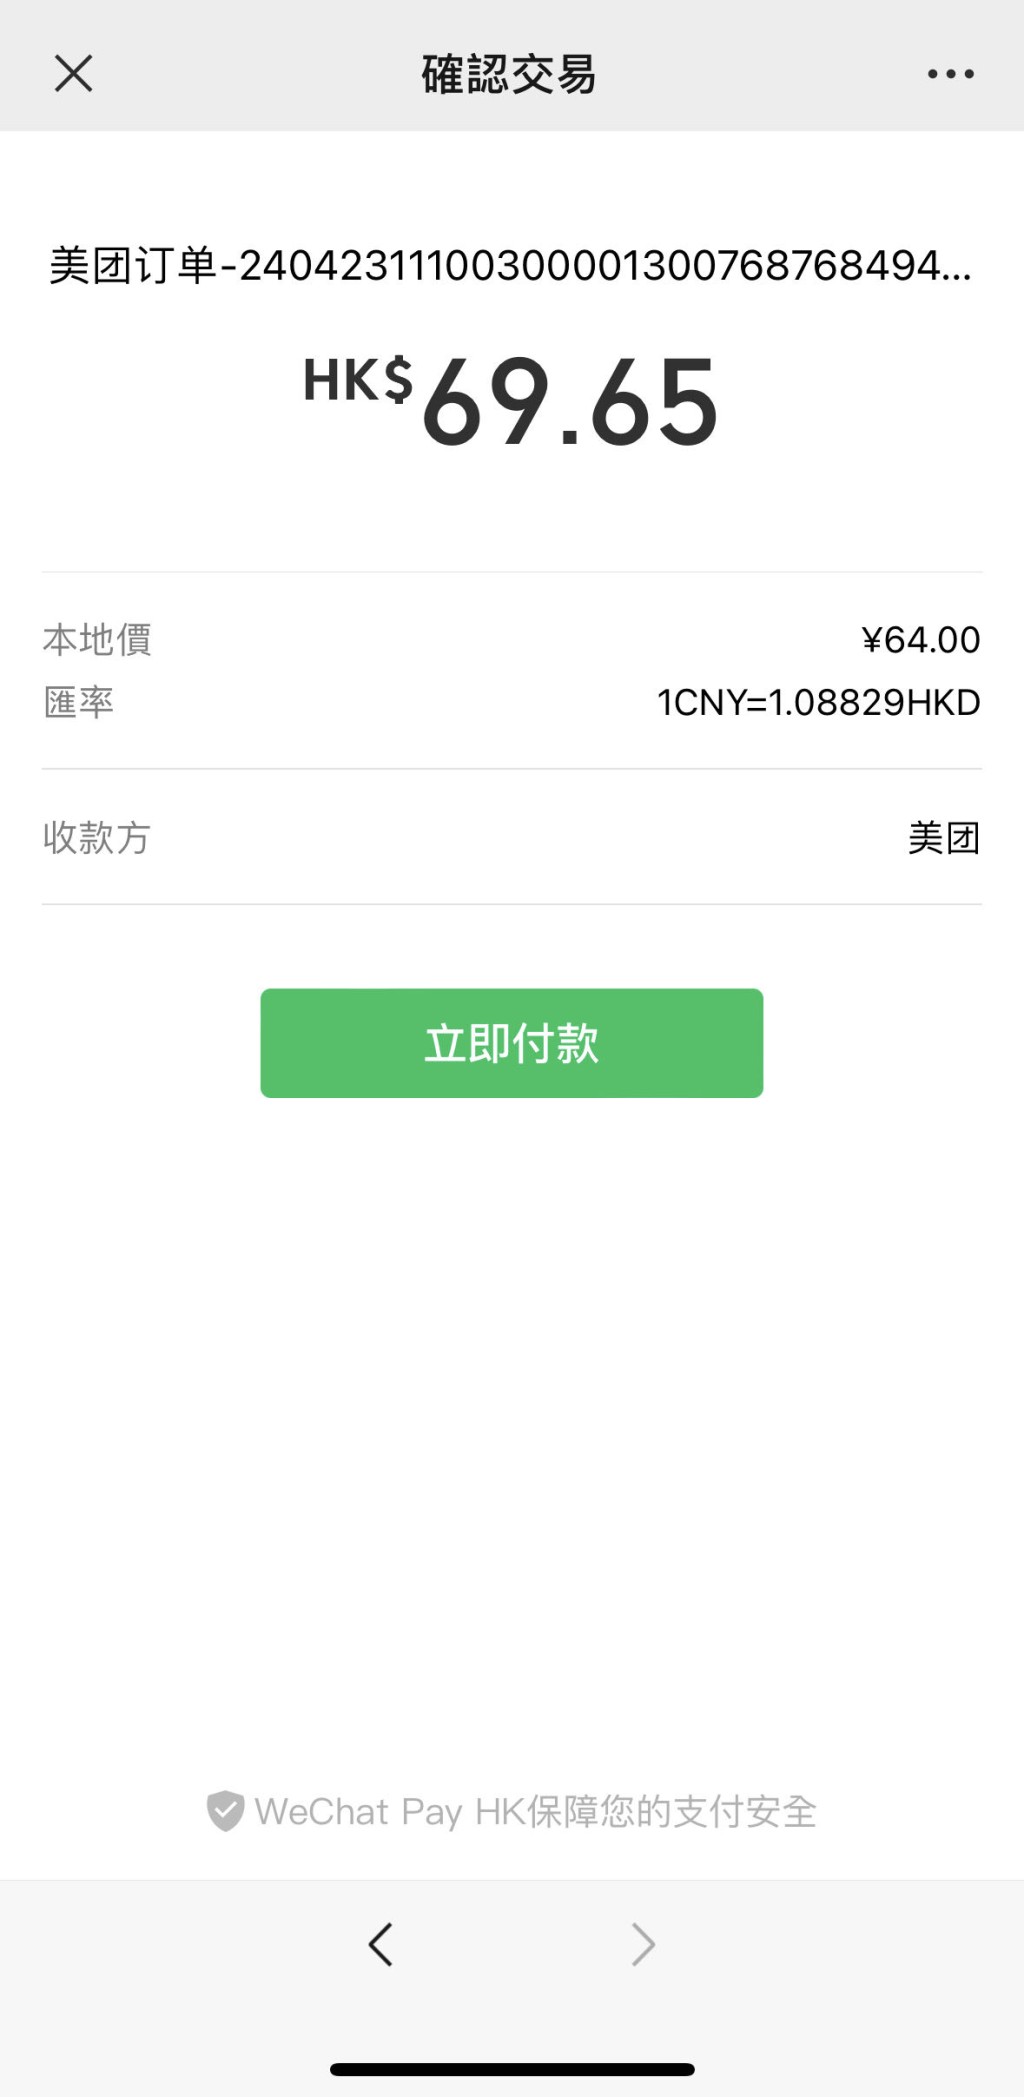  12. 跳转至WeChat Pay HK港币付款，0手续费